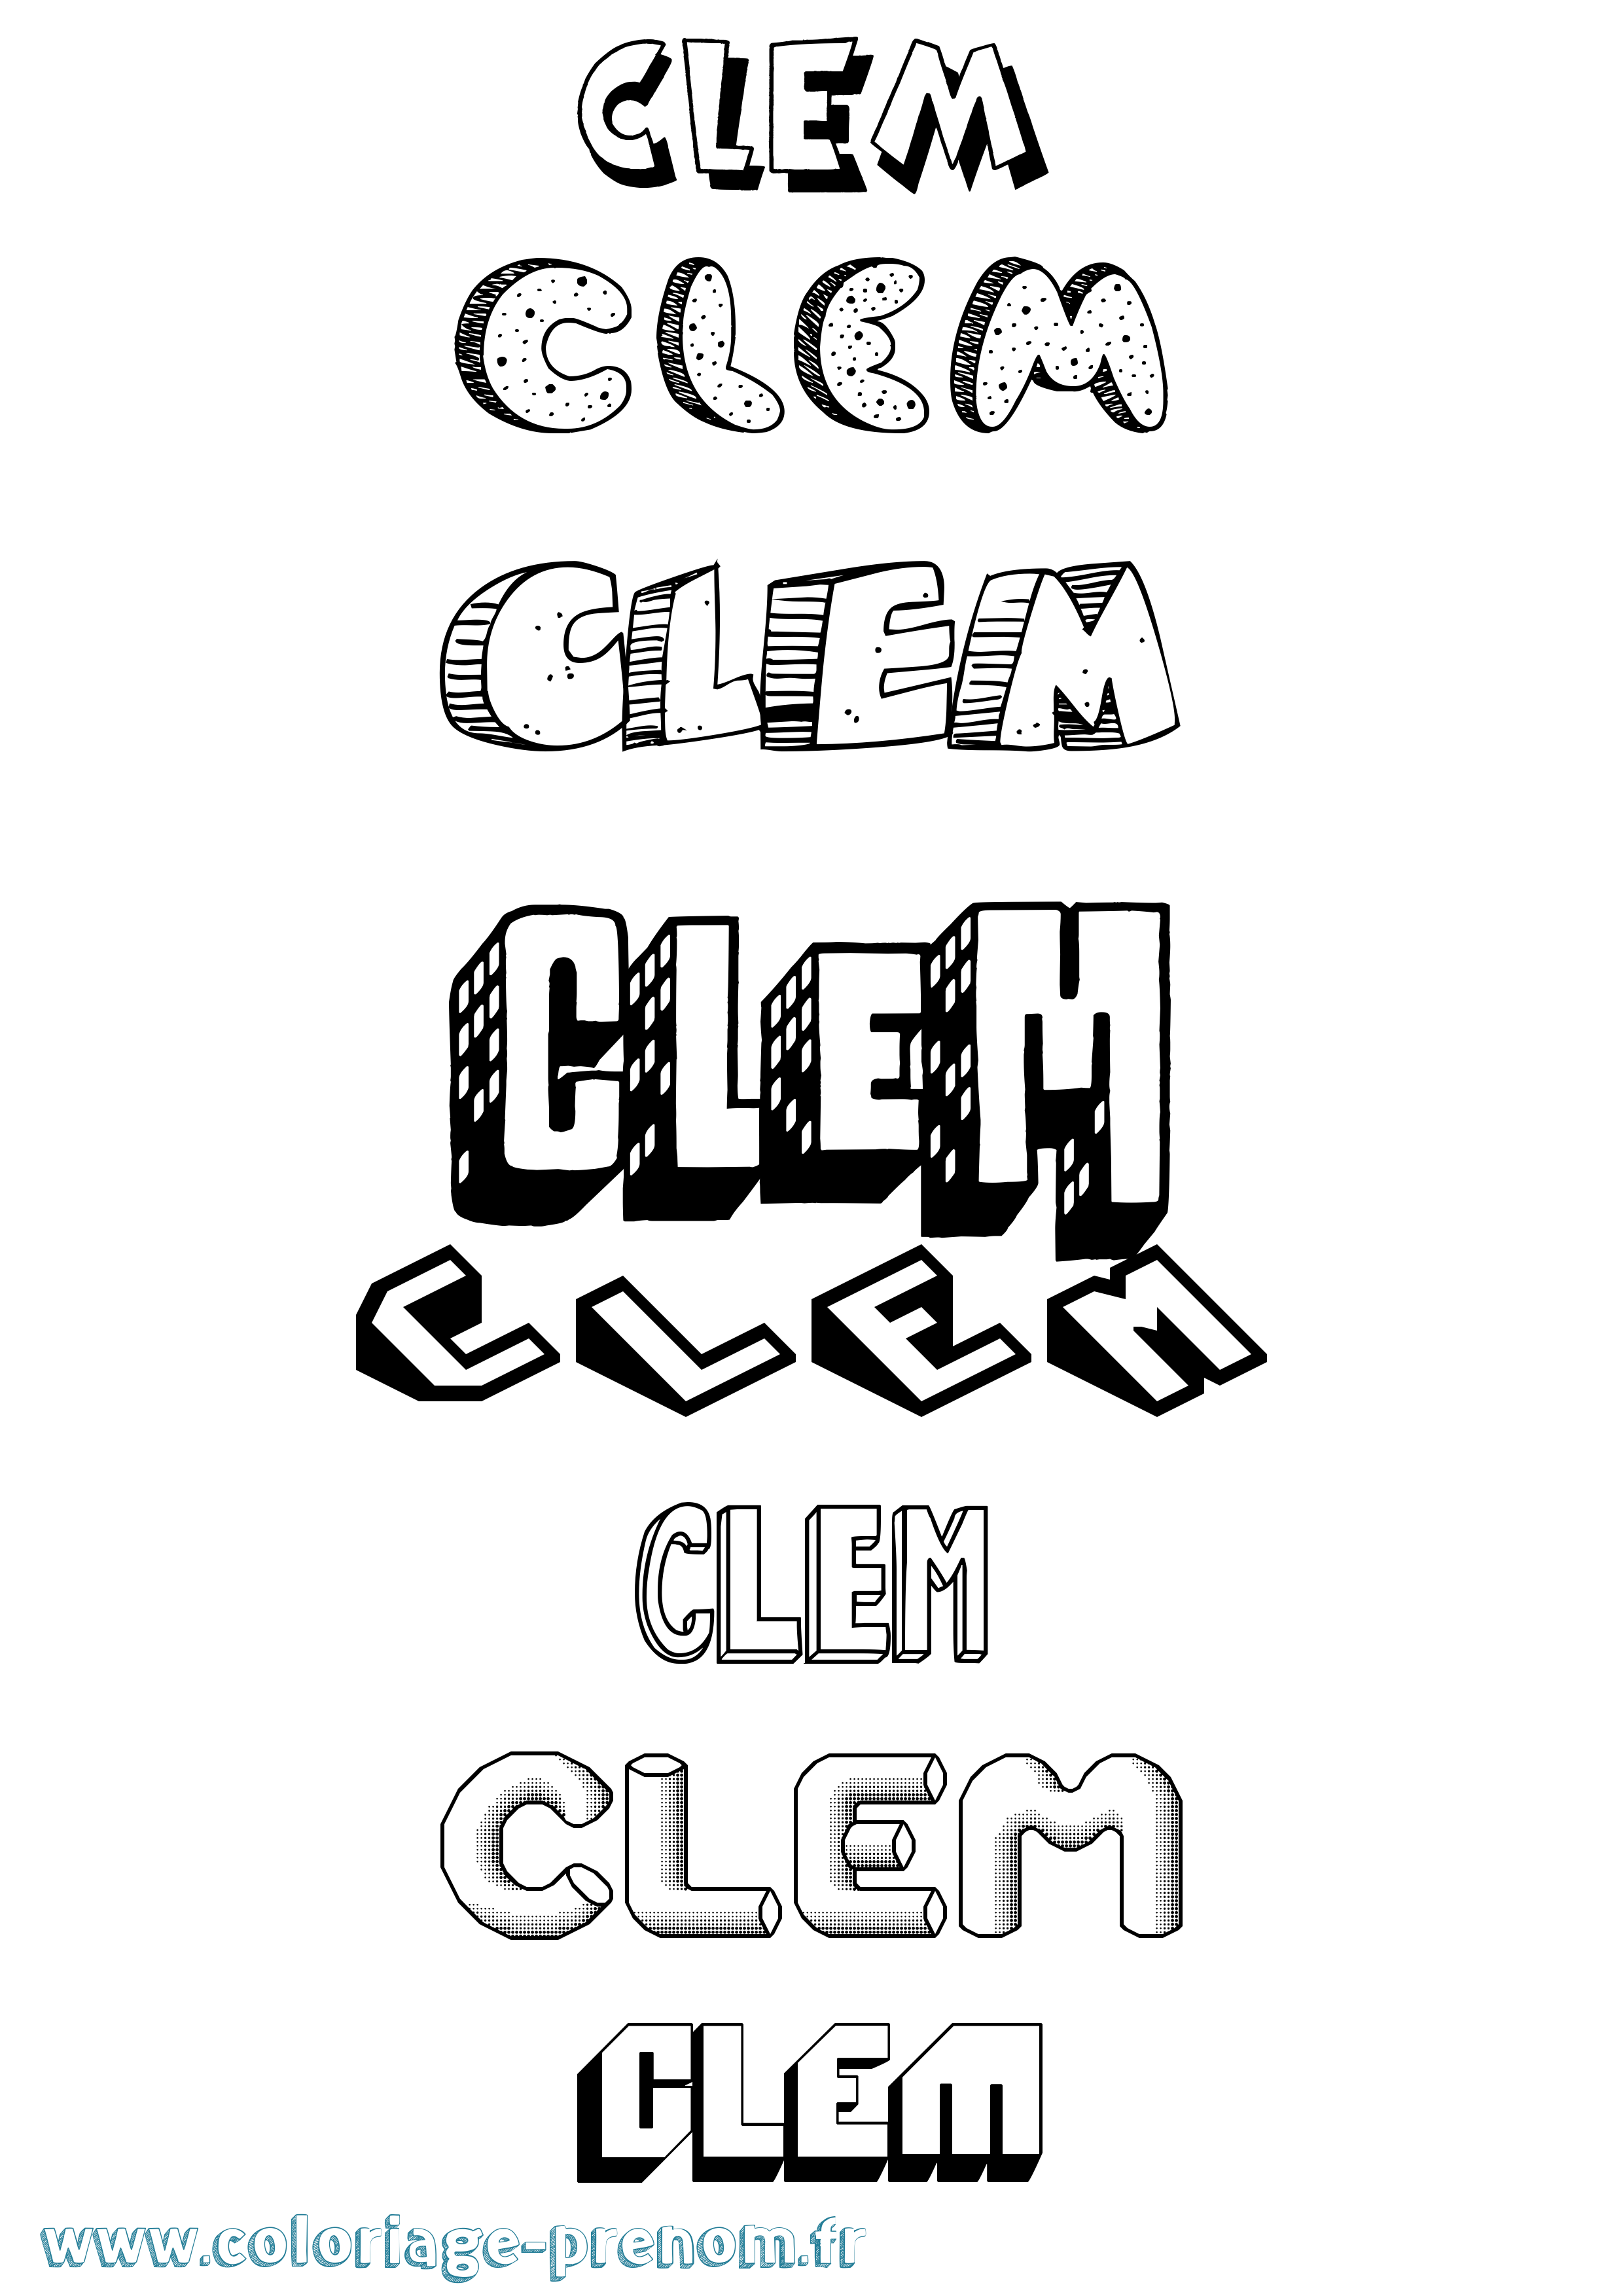 Coloriage prénom Clem Effet 3D